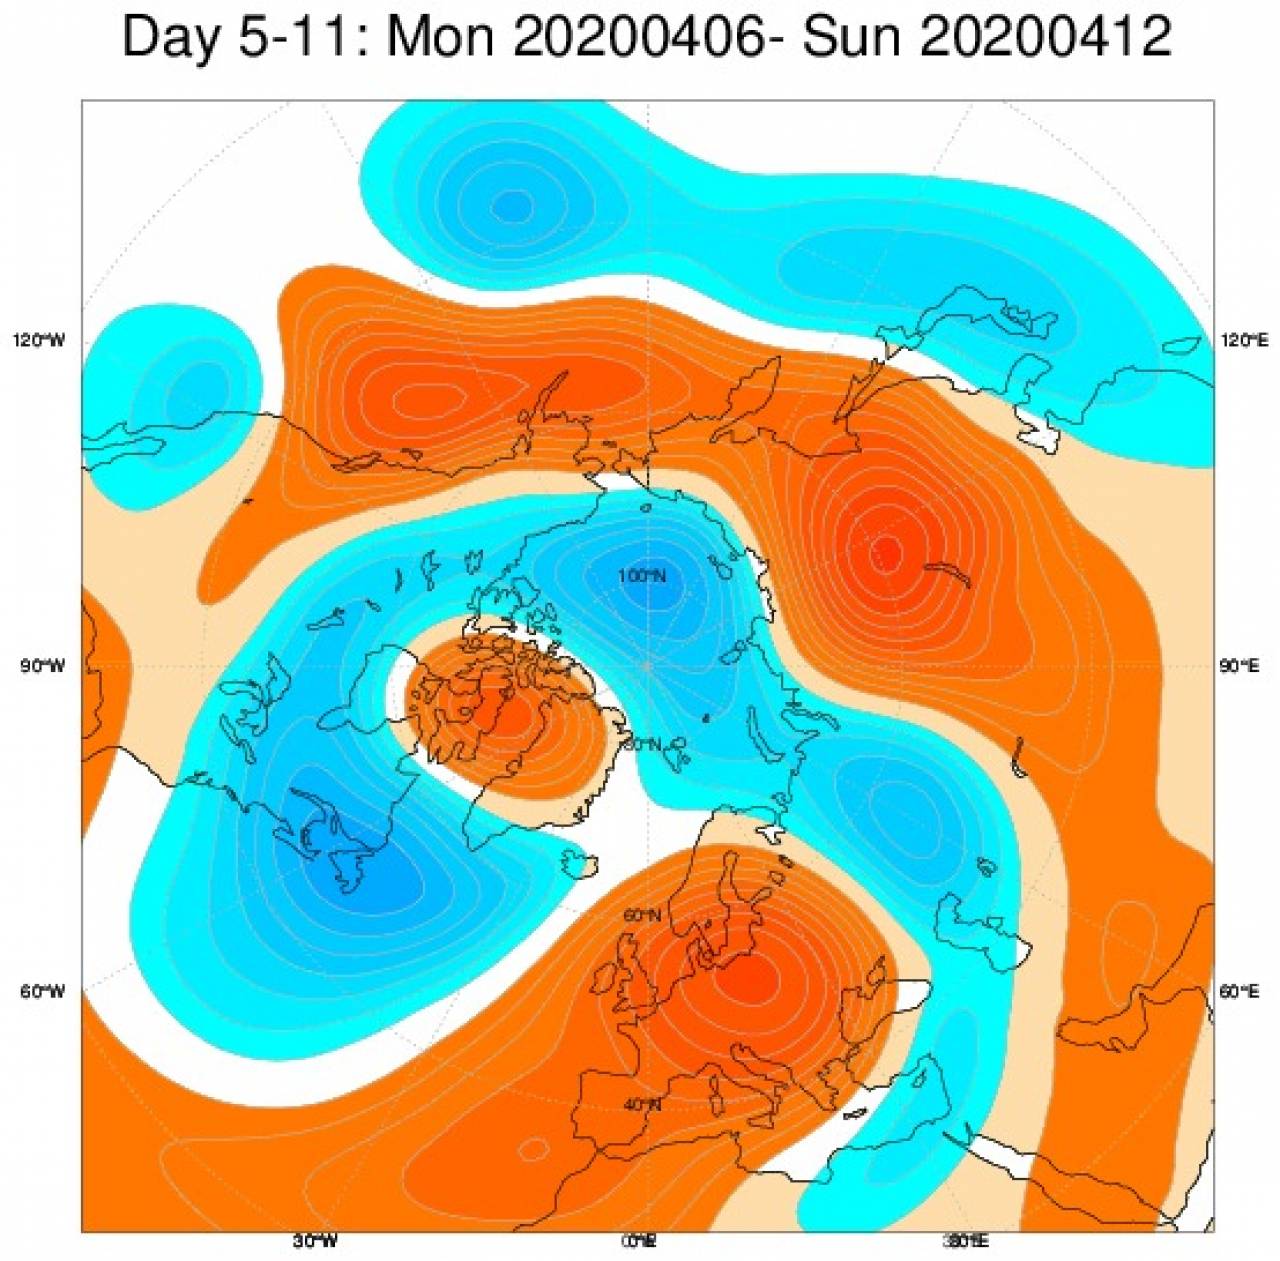 Tendenza meteo: le anomalie di geopotenziale previste nel periodo 6-12 aprile secondo il modello ECMWF